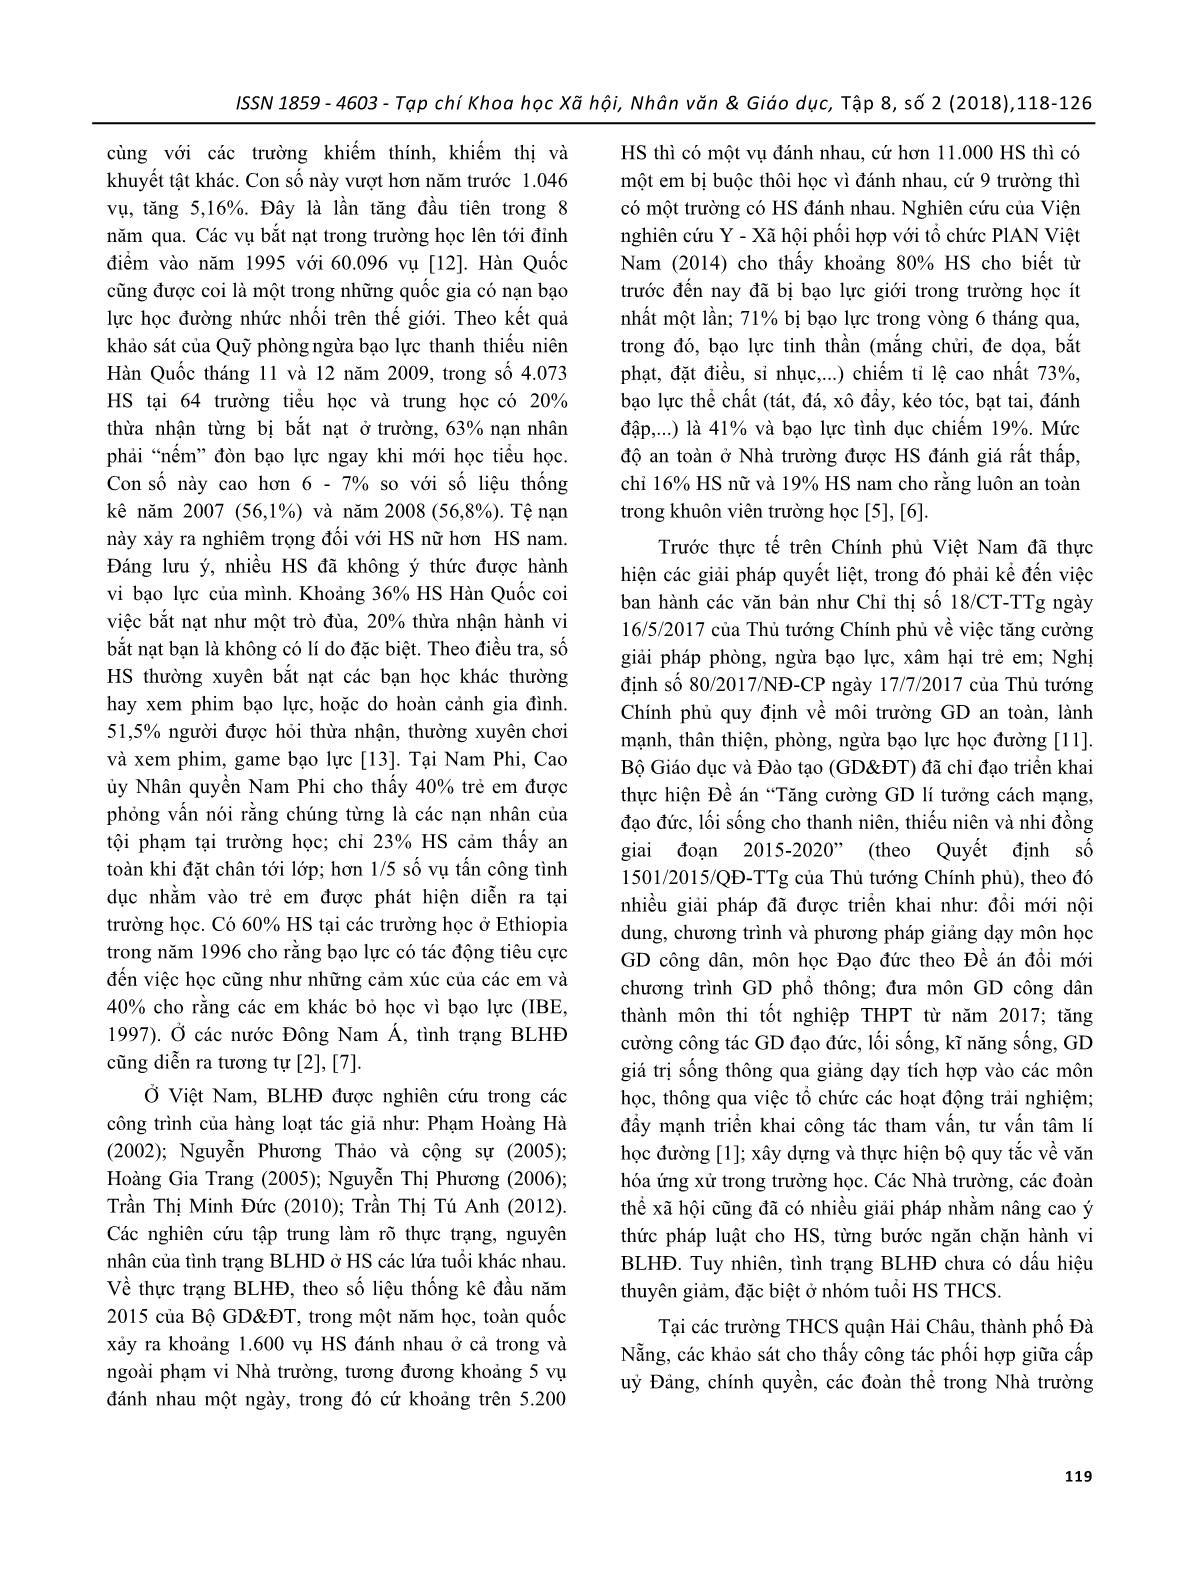 Giáo dục phòng ngừa bạo lực học đường cho học sinh trung học cơ sở: thực trạng và giải pháp (nghiên cứu tại các trường THCS quận Hải châu thành phố Đà Nẵng) trang 2